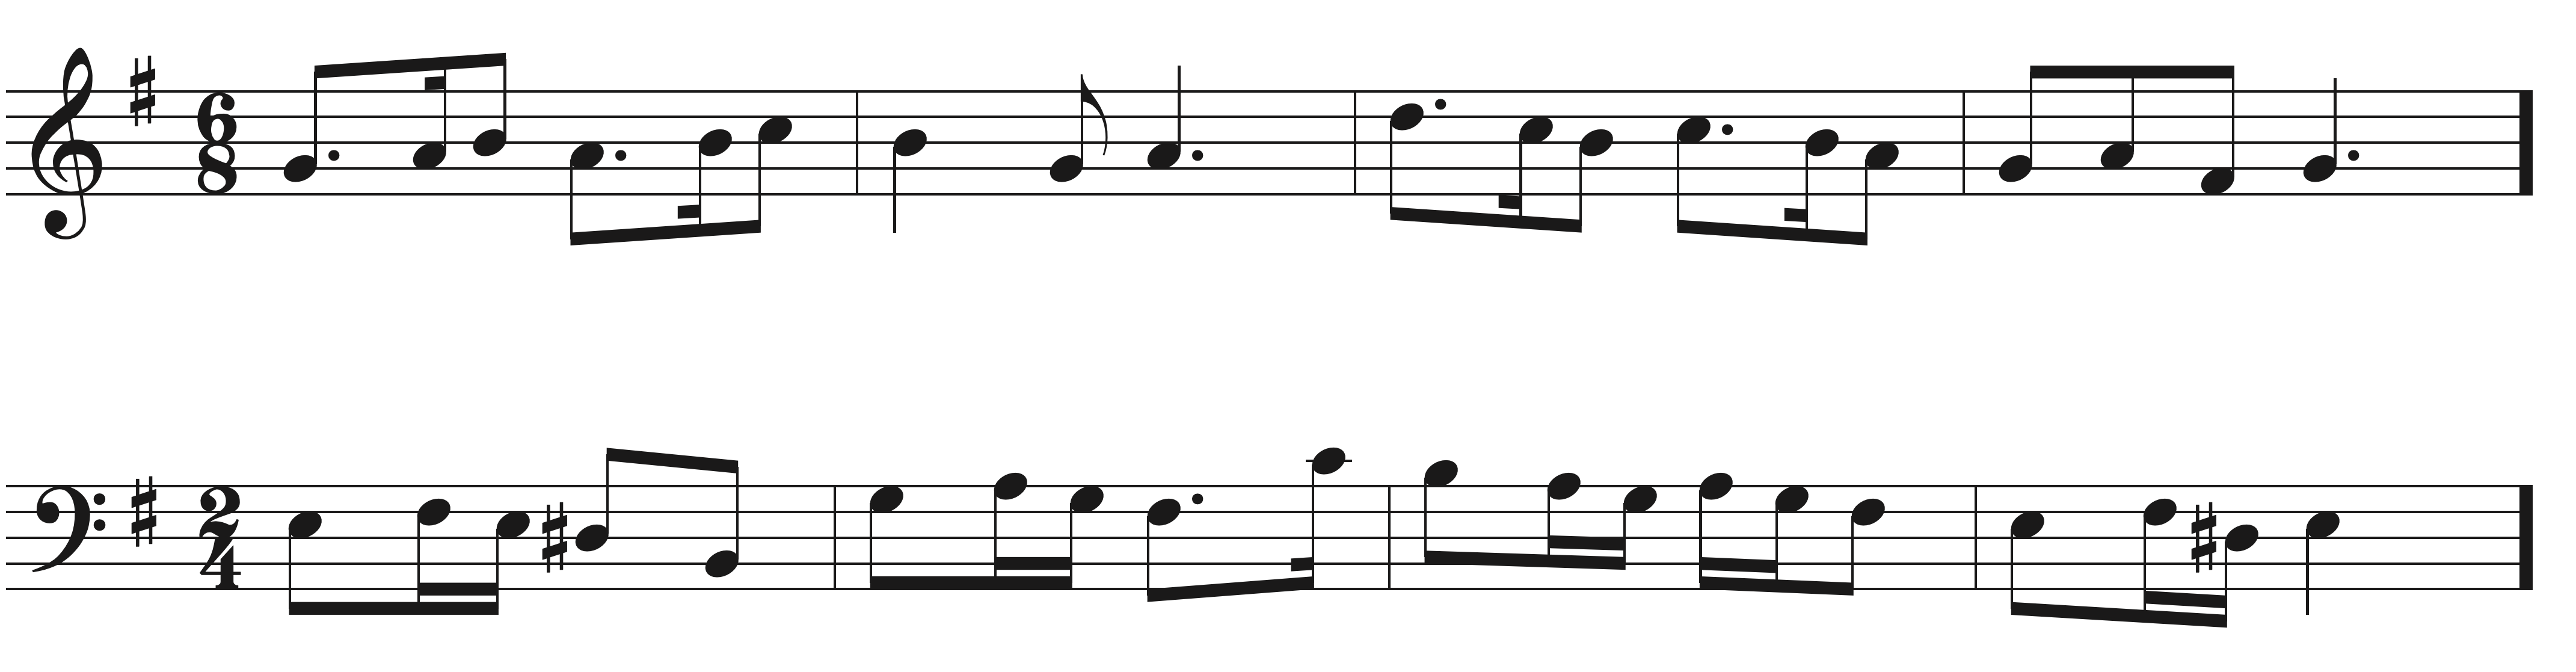 Melodic Motive Sight Singing exercise example